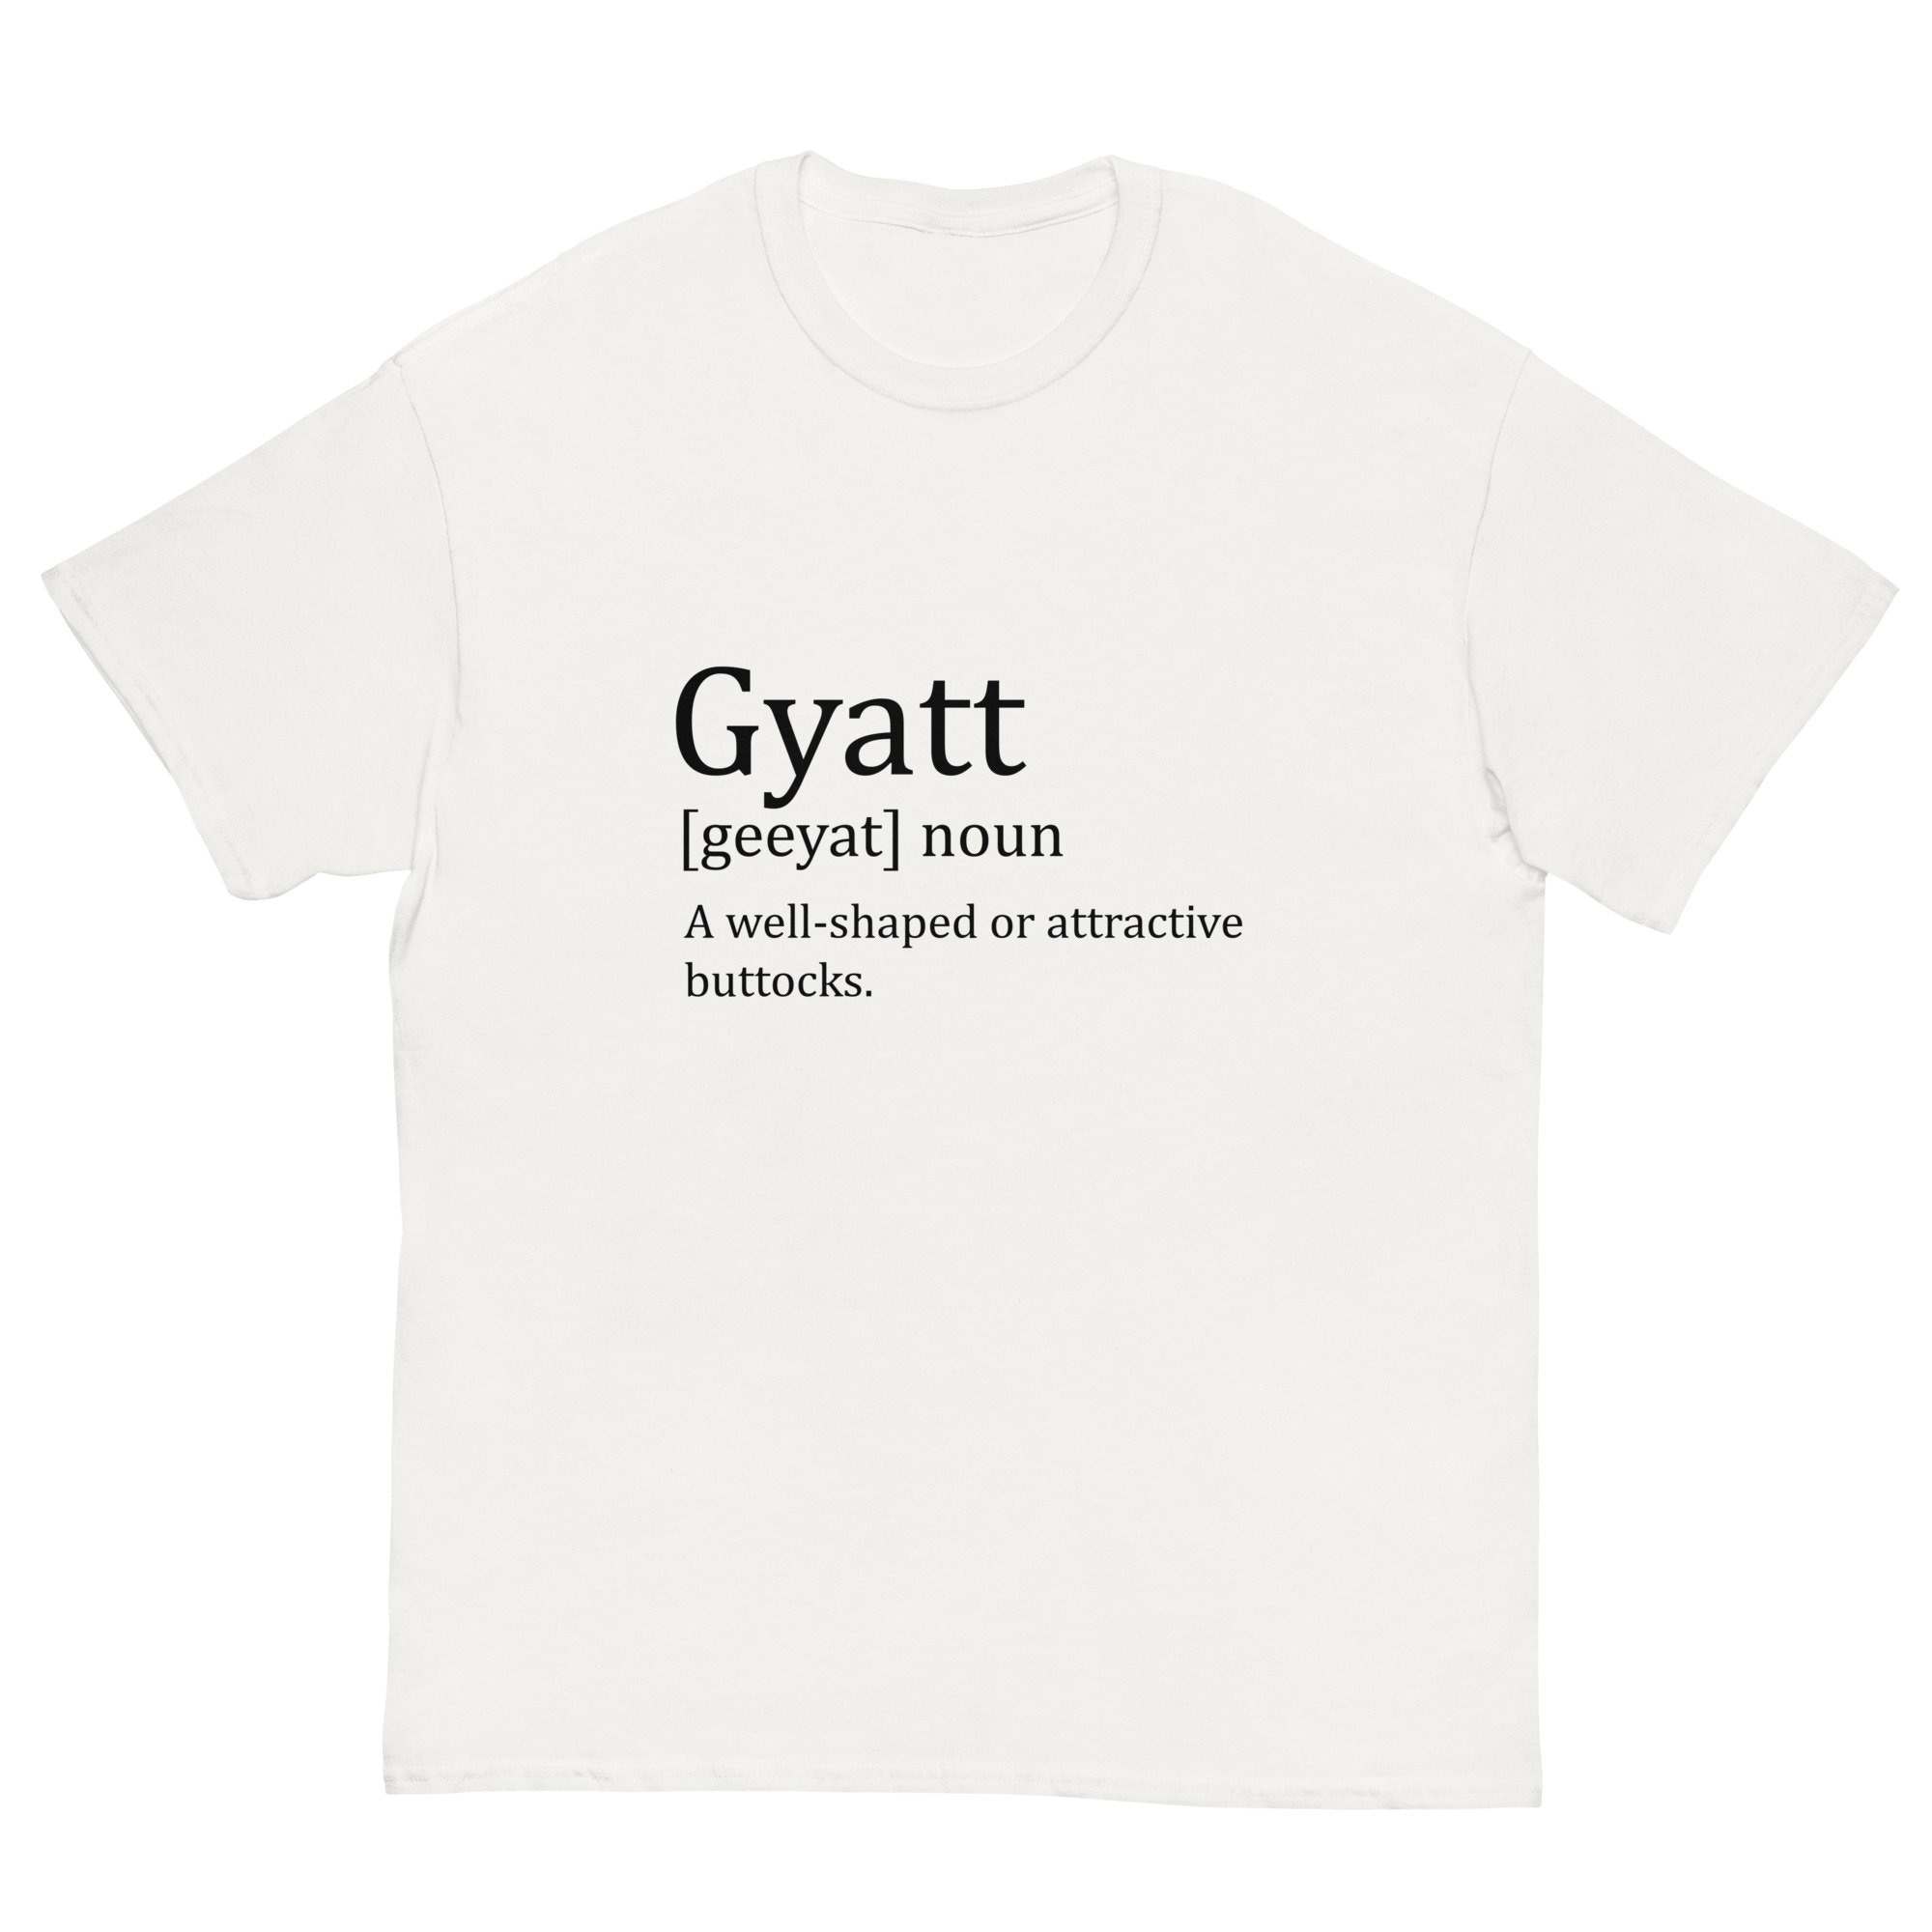 gyatt meaning slang